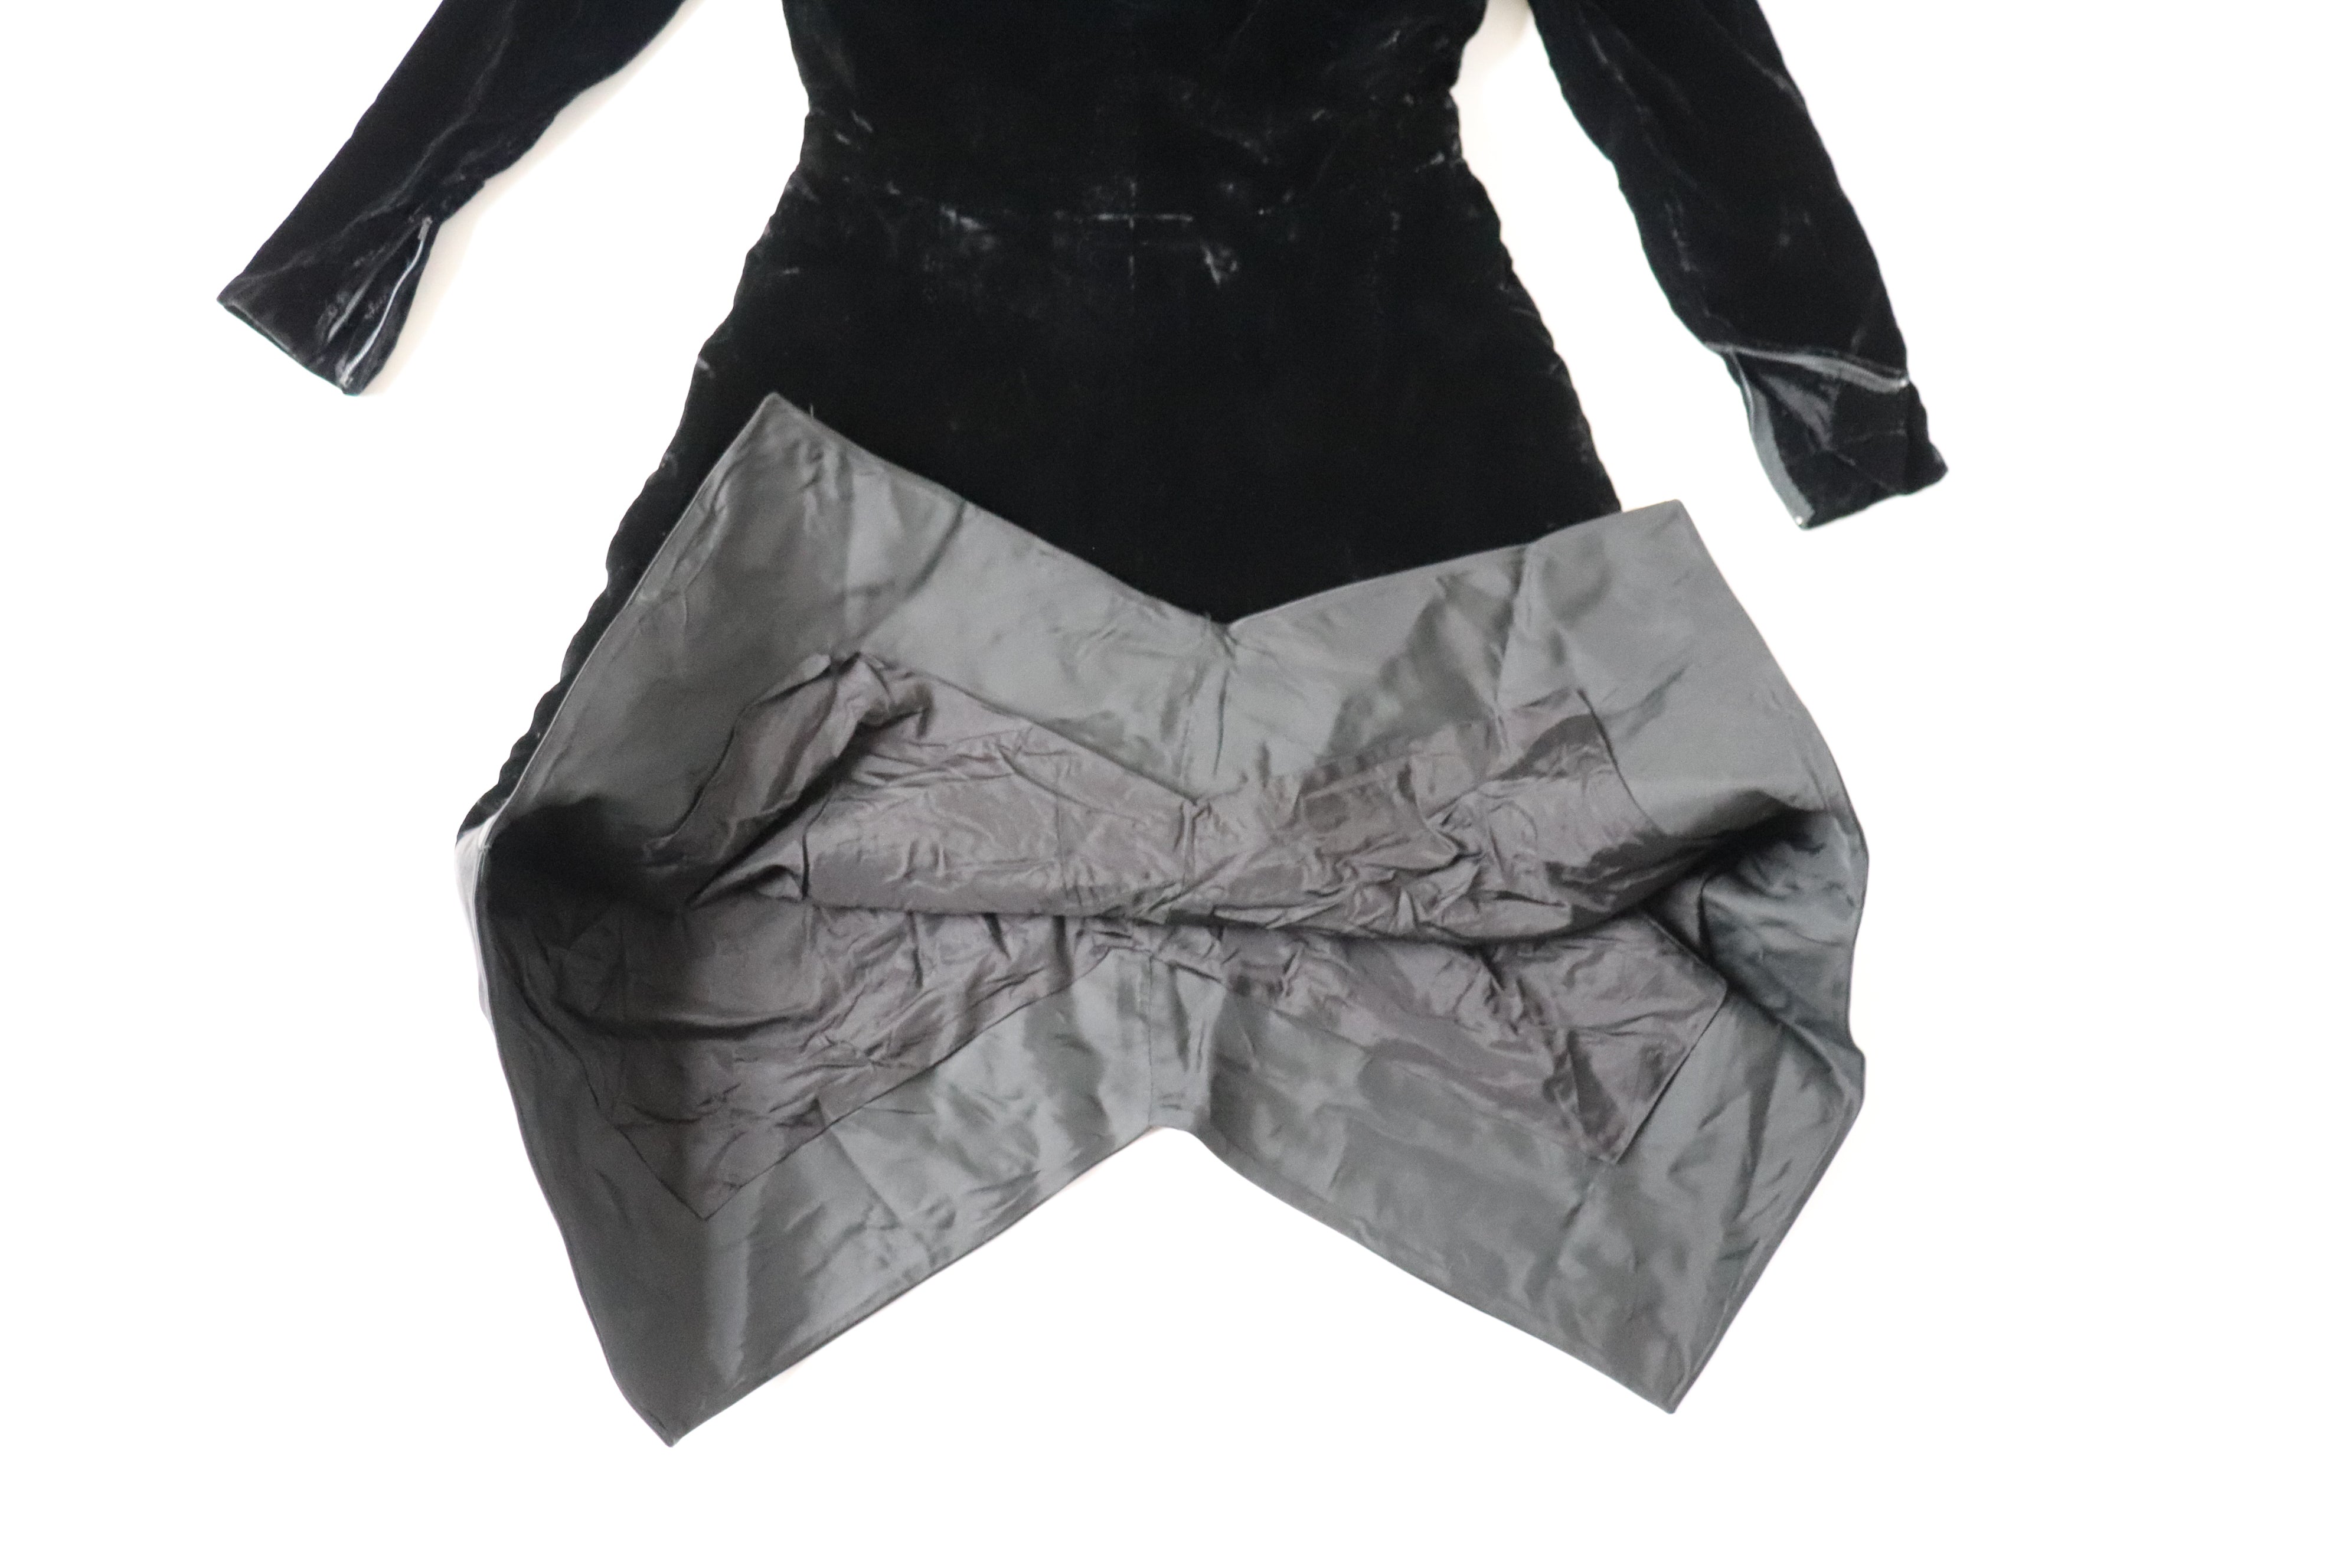 Dossi Black Velvet Long Sleeve Dress - Vintage LBD - 1960s - XXS - UK 6 / 8